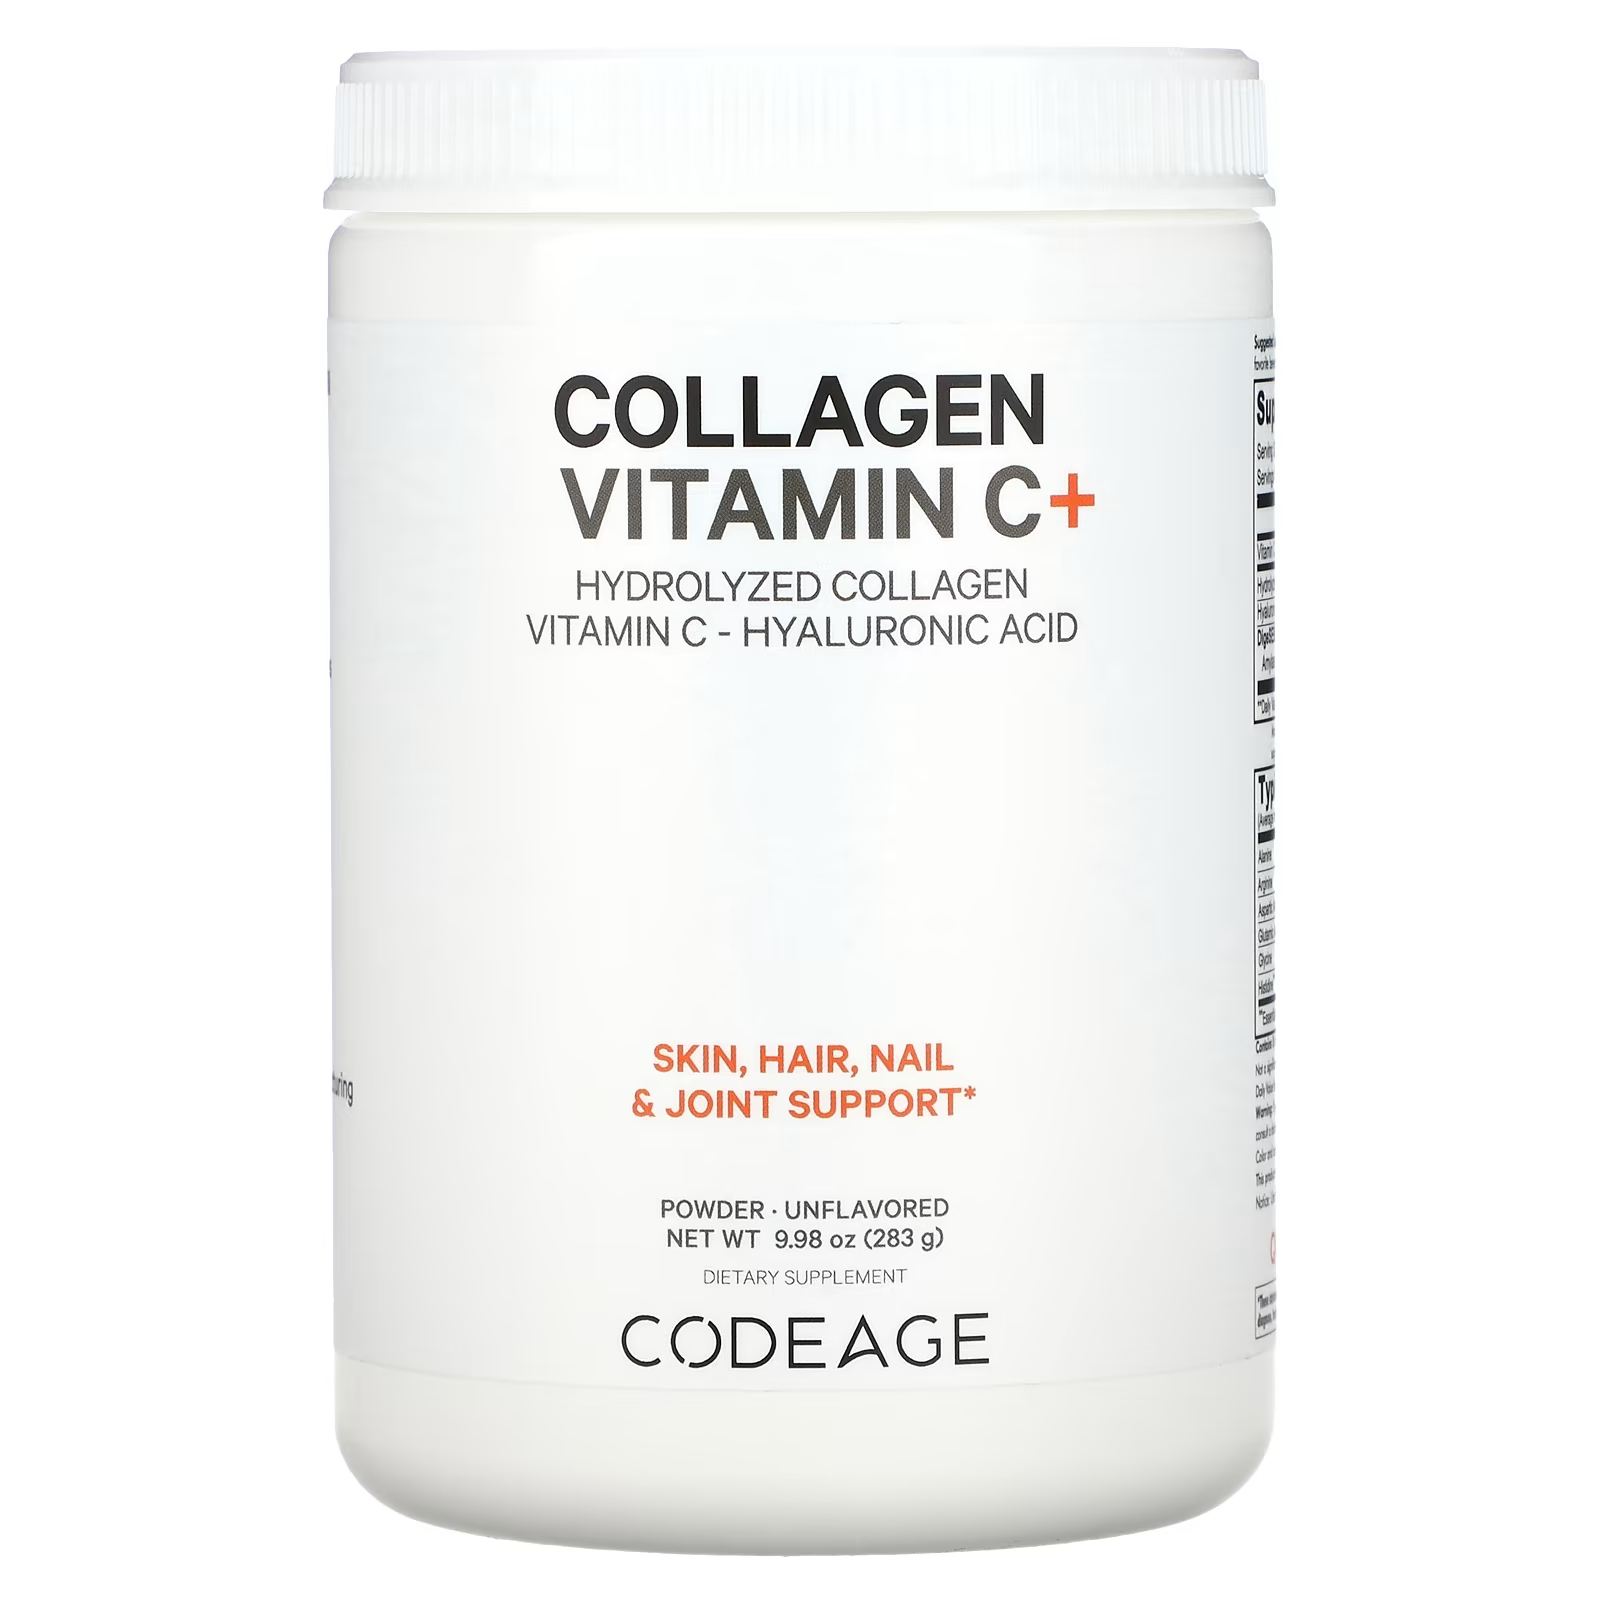 Codeage Коллаген, витамин С + порошок, гидролизованный коллаген, витамин С, гиалуроновая кислота, без вкуса, 9,98 унции (283 г) codeage коллаген в порошке с витамином c без добавок 283 г 9 98 унции